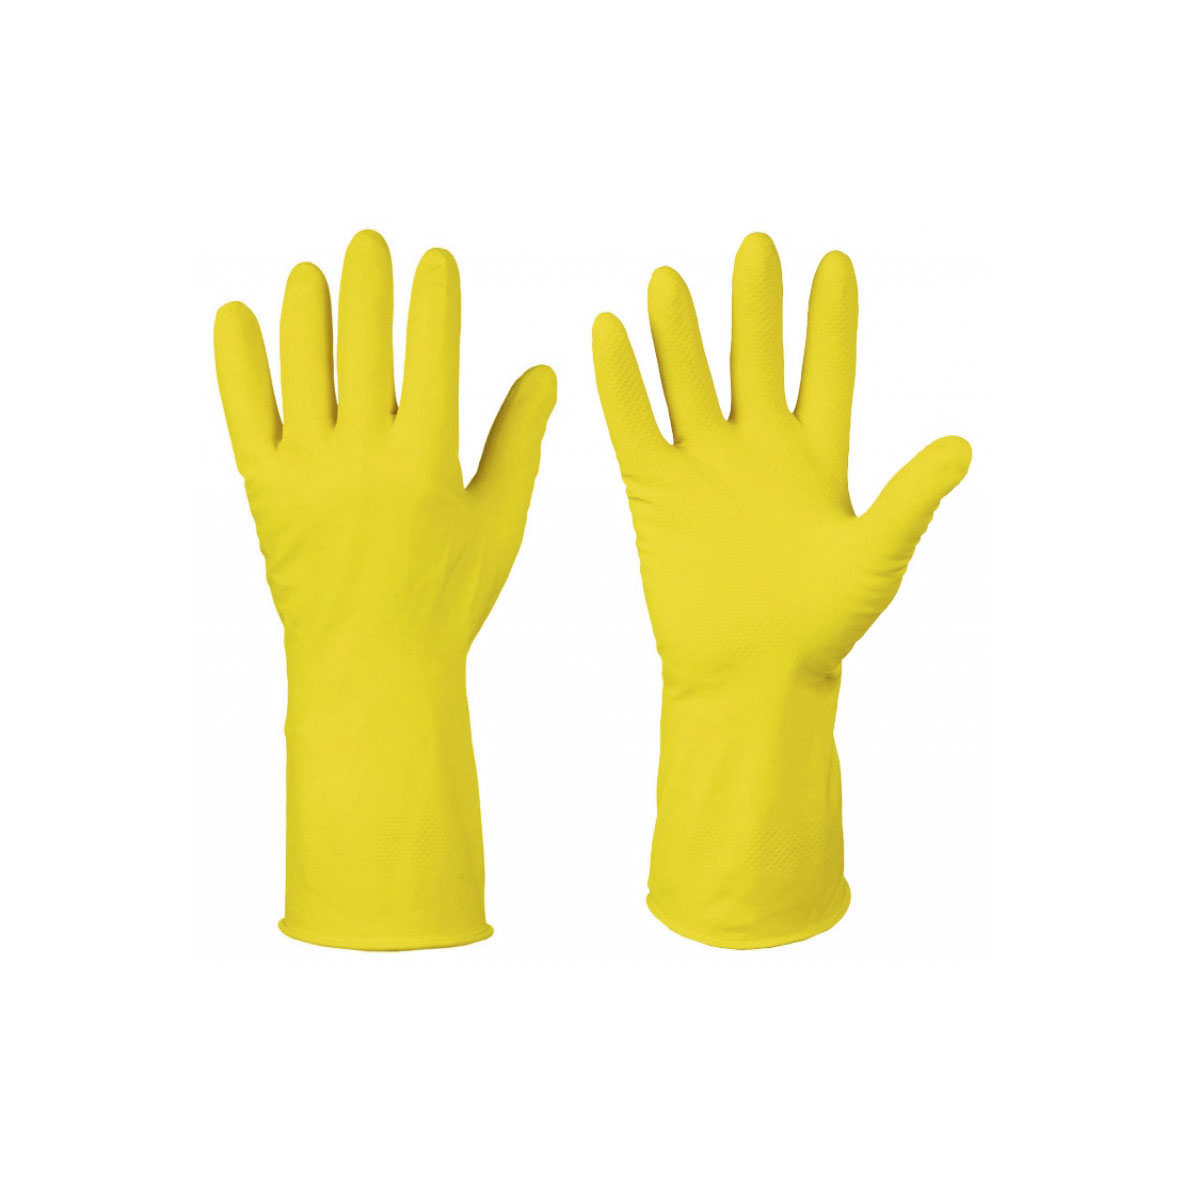 Перчатки хозяйственные латексные, с хлопковым напылением, разм.M, желтые, (упак. 1 пара)